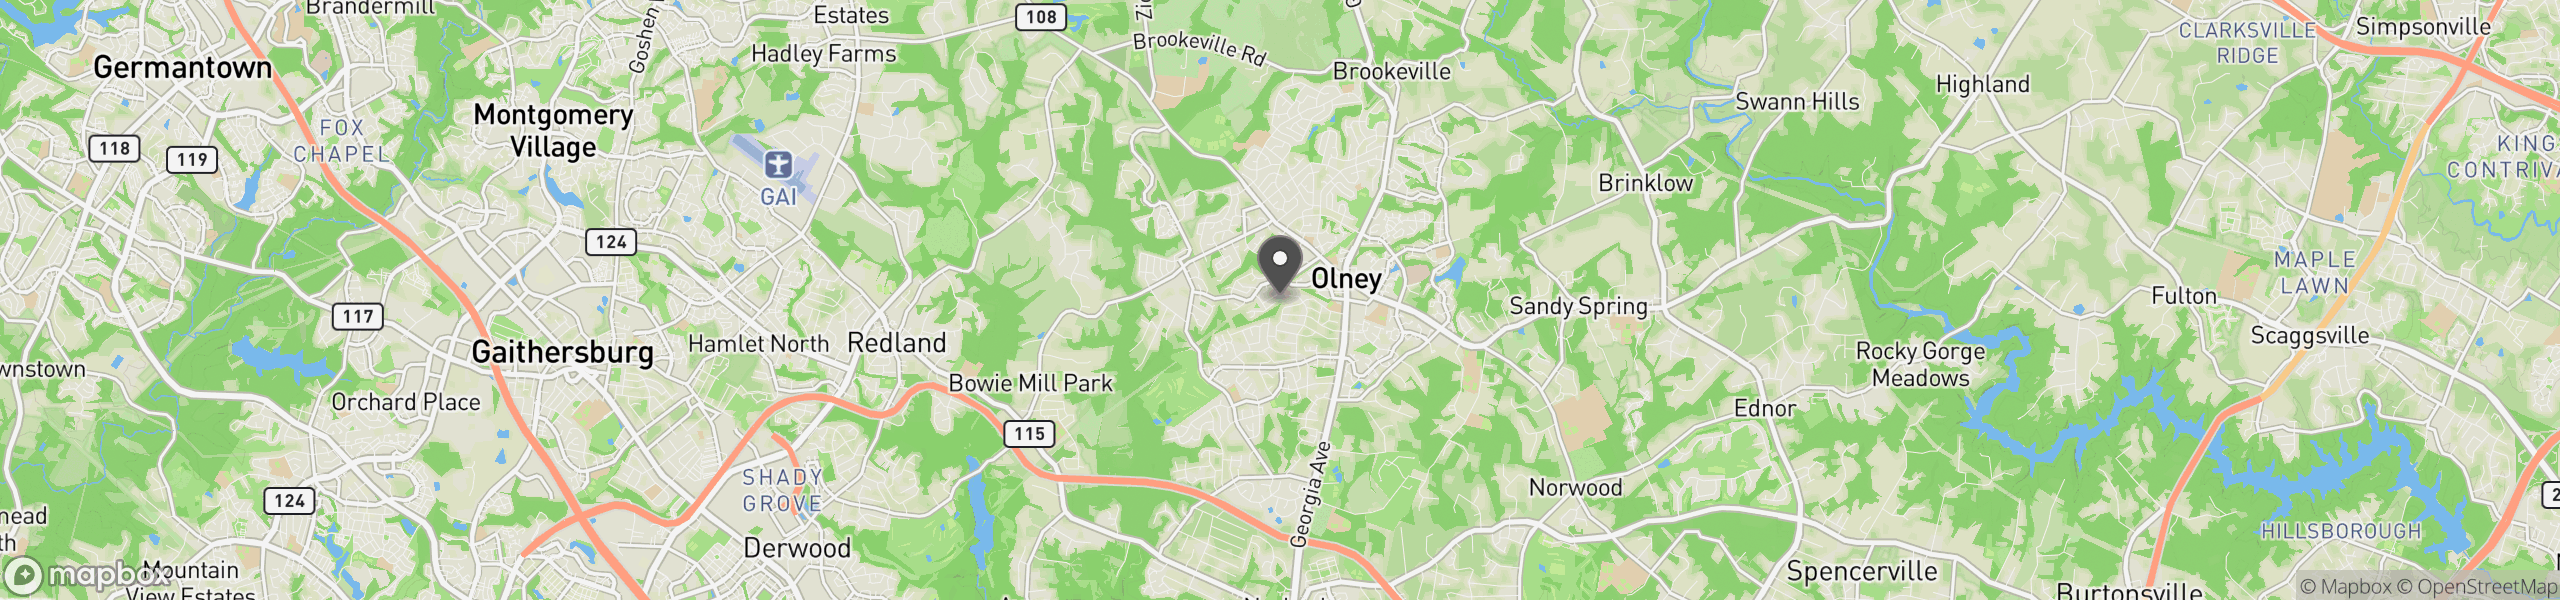 Olney, MD 20832